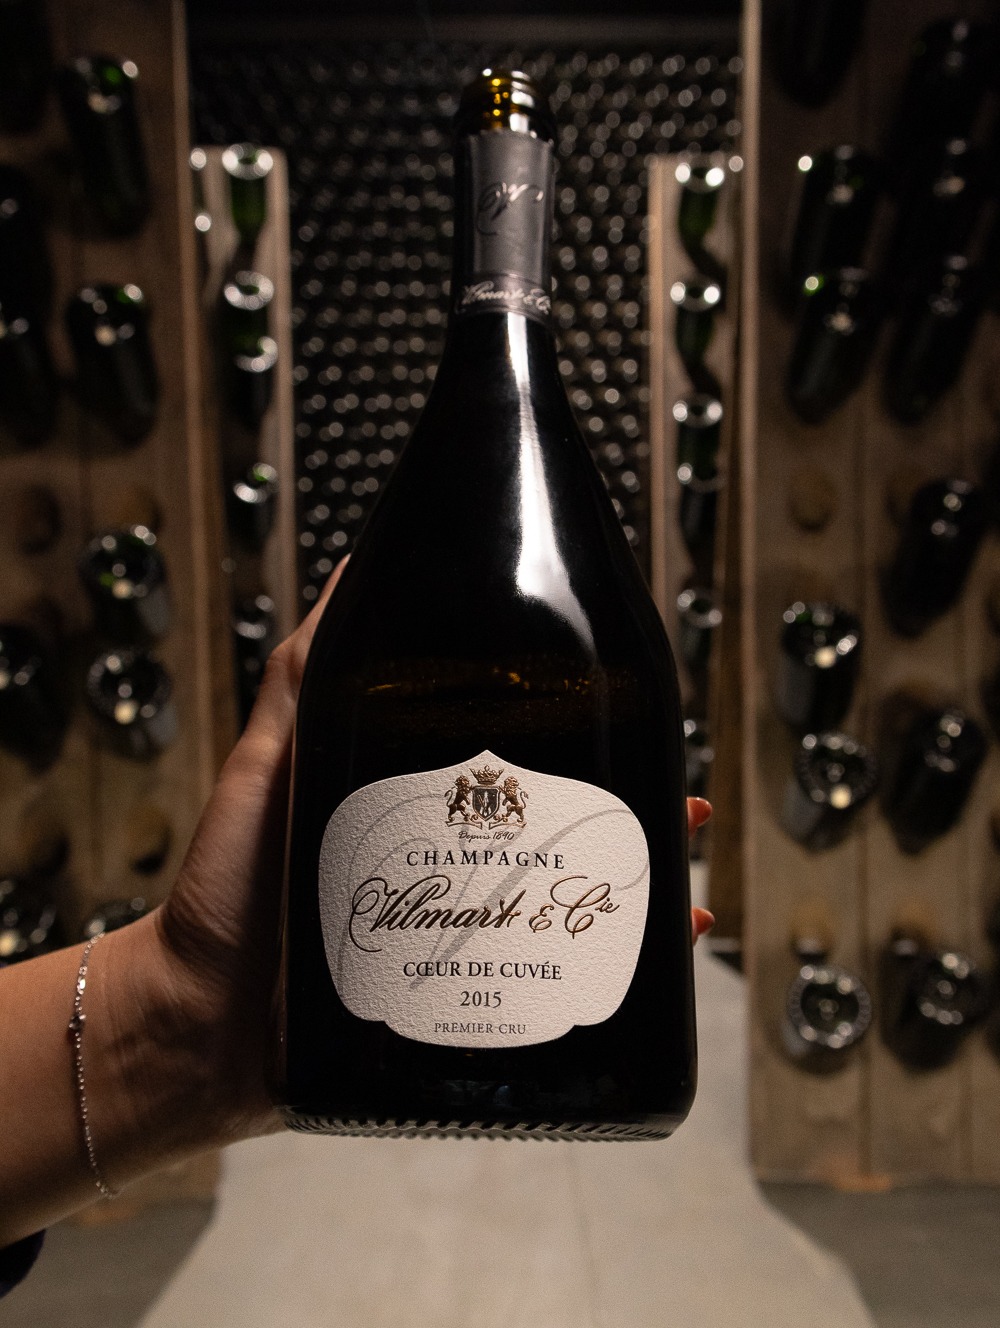 Champagne Vilmart & Cie Coeur de Cuvee Brut Premier Cru 2015